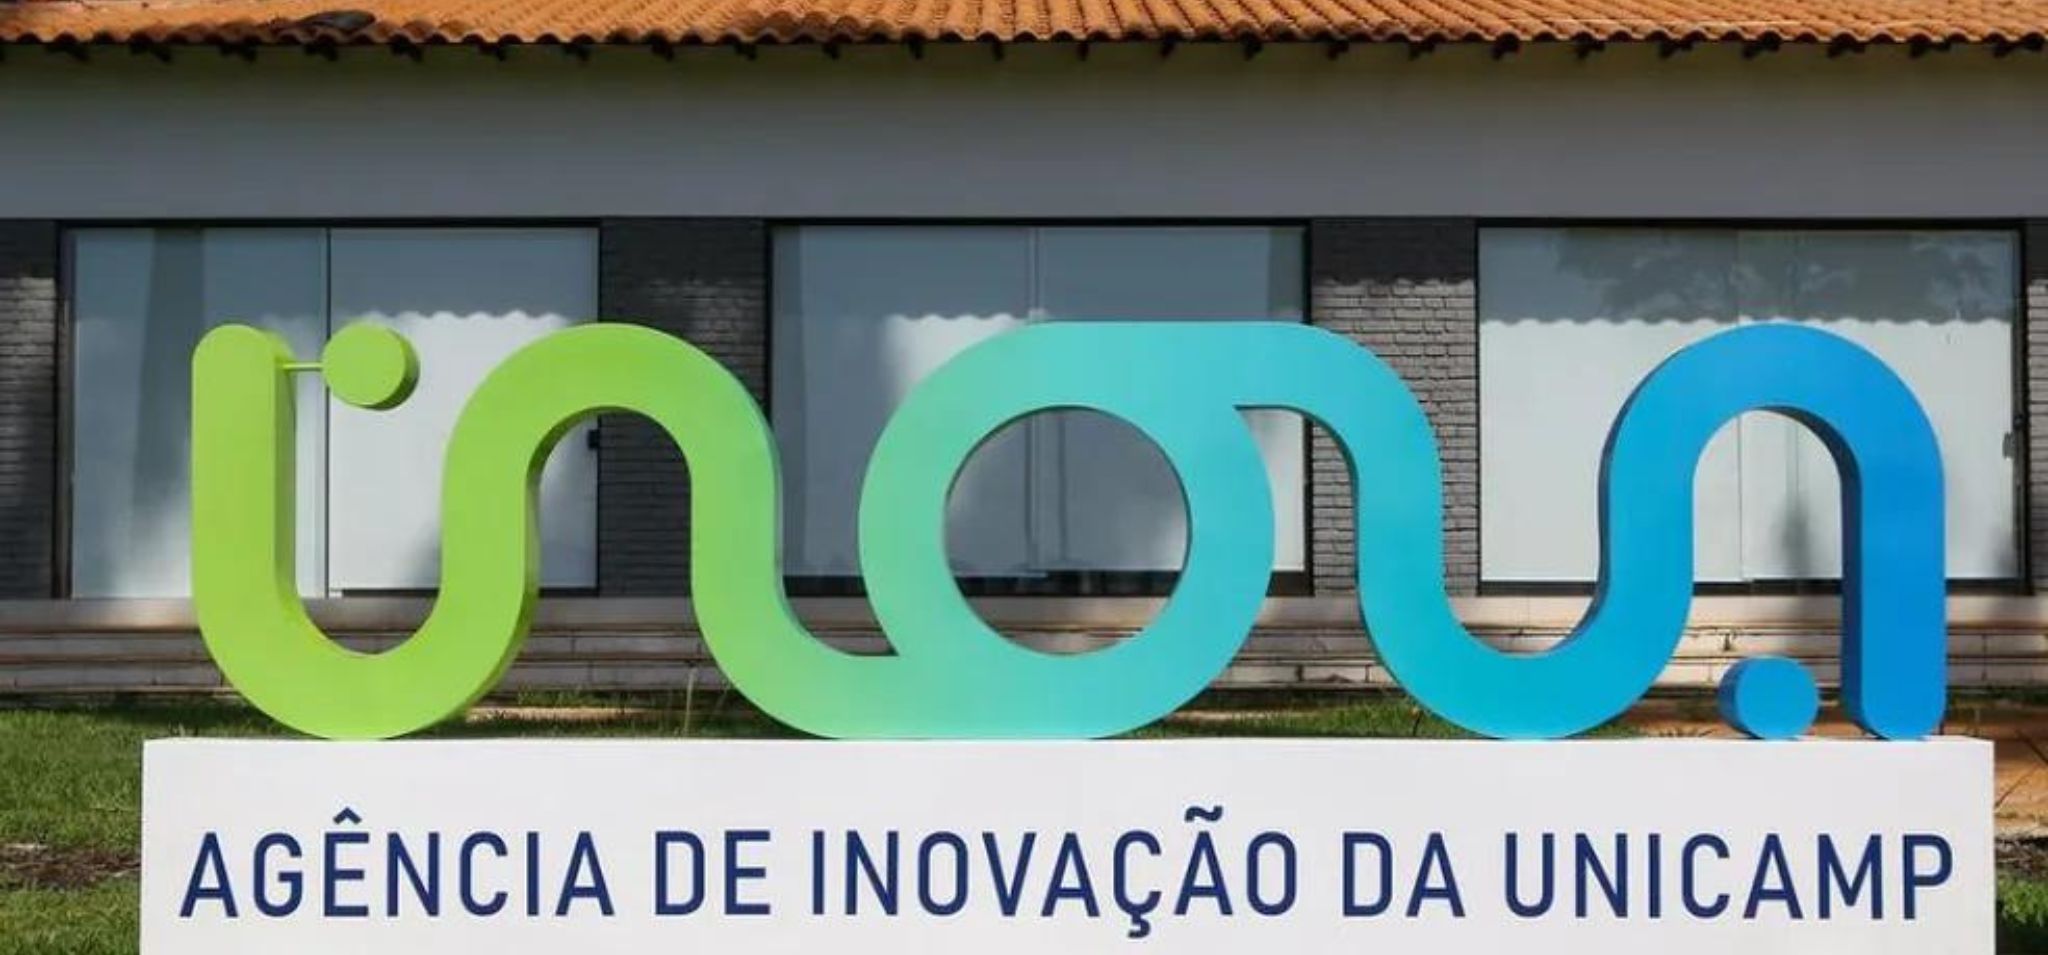 A imagem mostra uma placa da “Agência de Inovação da UNICAMP” no Brasil. A placa é composta pela palavra “Inova” em uma fonte estilizada, com as letras “I” e “n” em verde e as letras “o”, “v” e “a” em azul. A placa está sobre uma base de concreto branco com as palavras “Agência de Inovação da UNICAMP” em letras pretas. O fundo consiste em um prédio com telhado vermelho e paredes brancas.